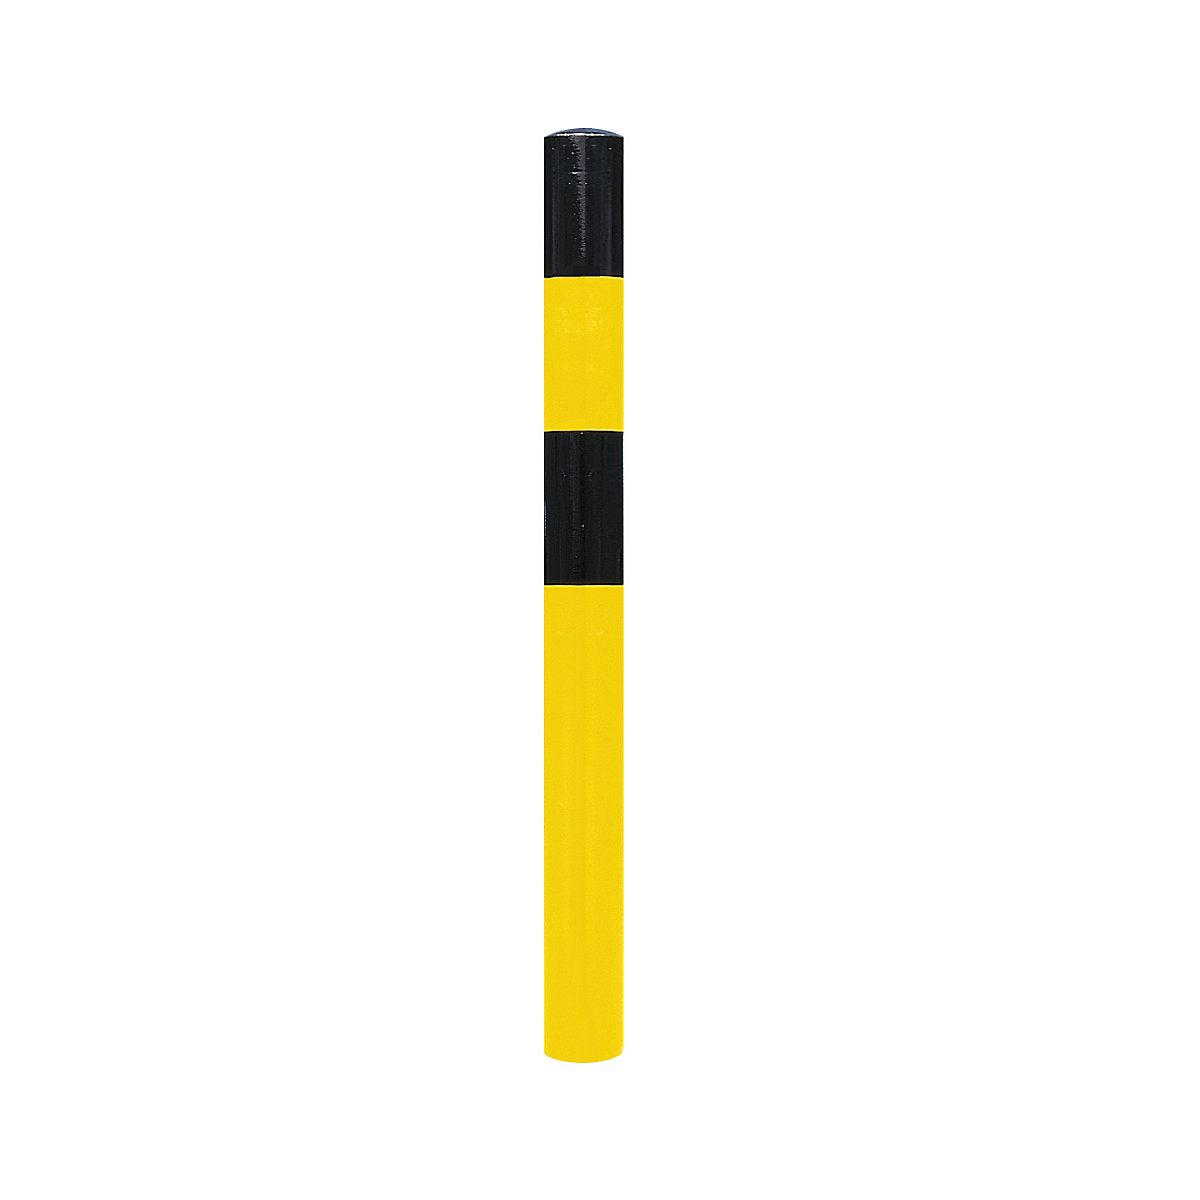 Stup za ograđivanje, za betoniranje, Ø 90 mm, lakiranje u crno-žutoj boji-10